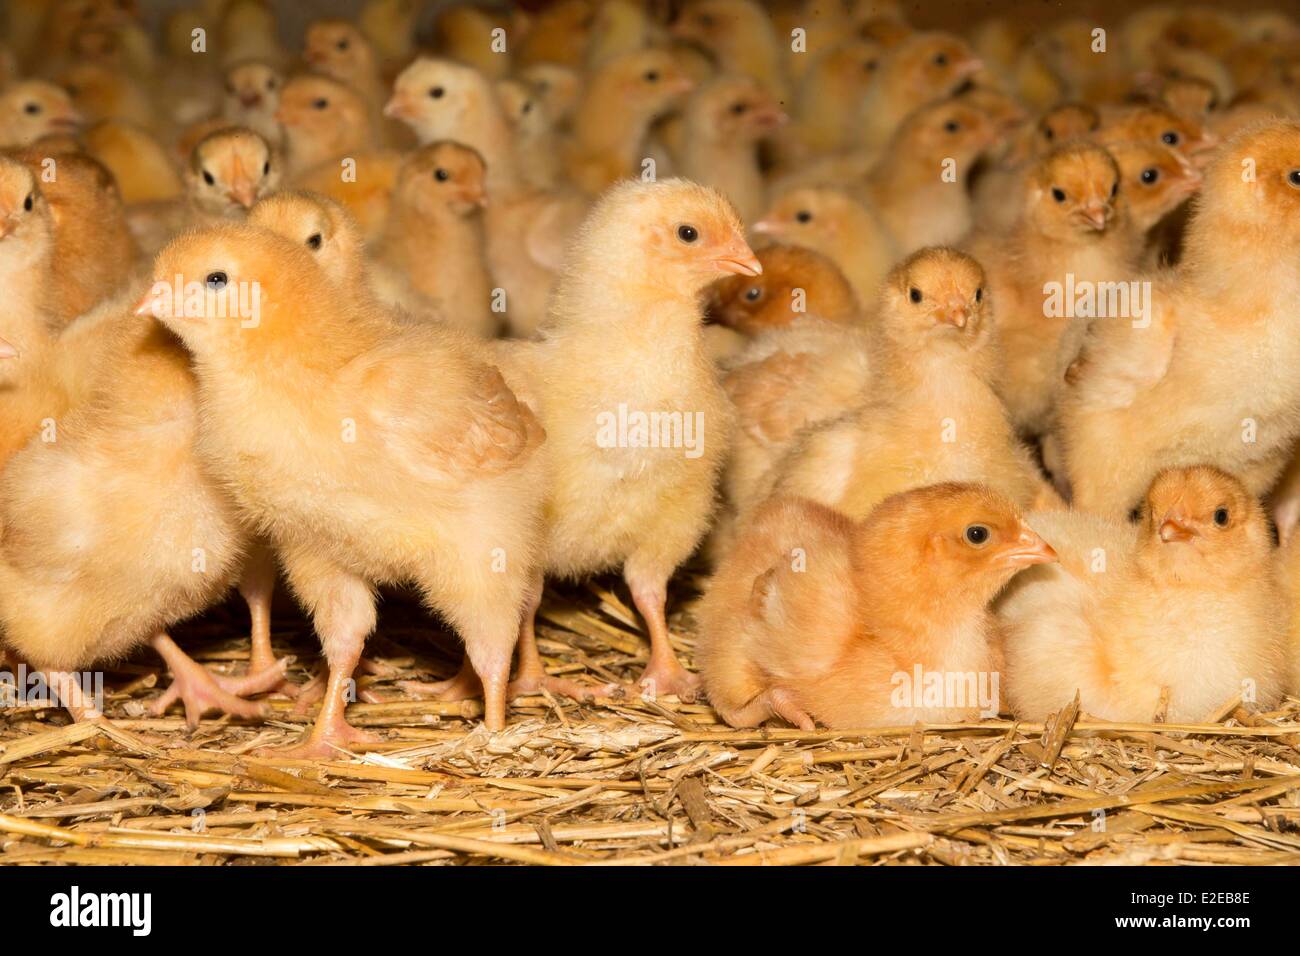 La France, Bas Rhin, Siegen, l'aviculture , élevage de poulets Photo Stock  - Alamy